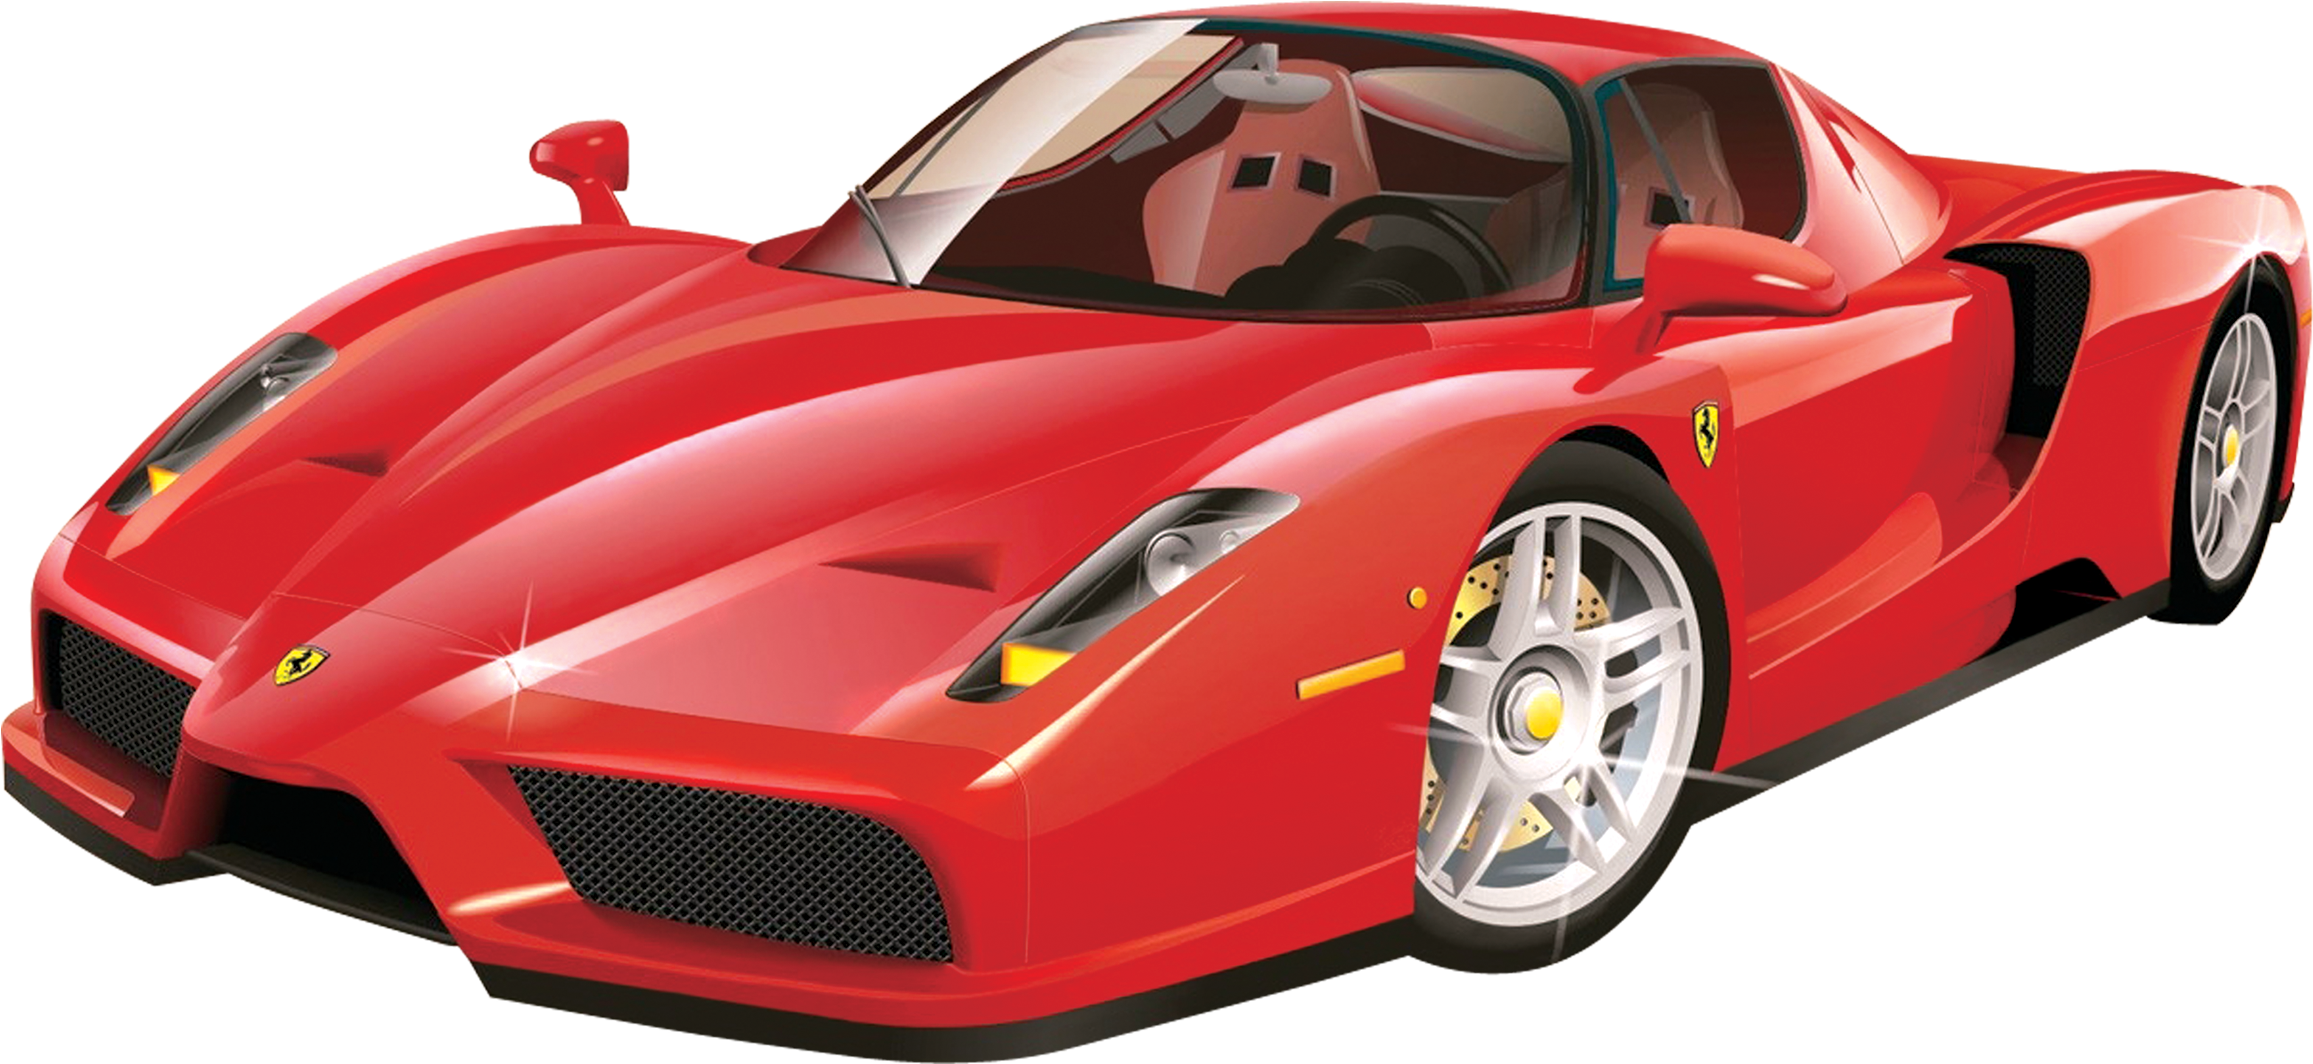 3000 X 1584 5 - Ferrari Vector Clipart (3000x1584), Png Download